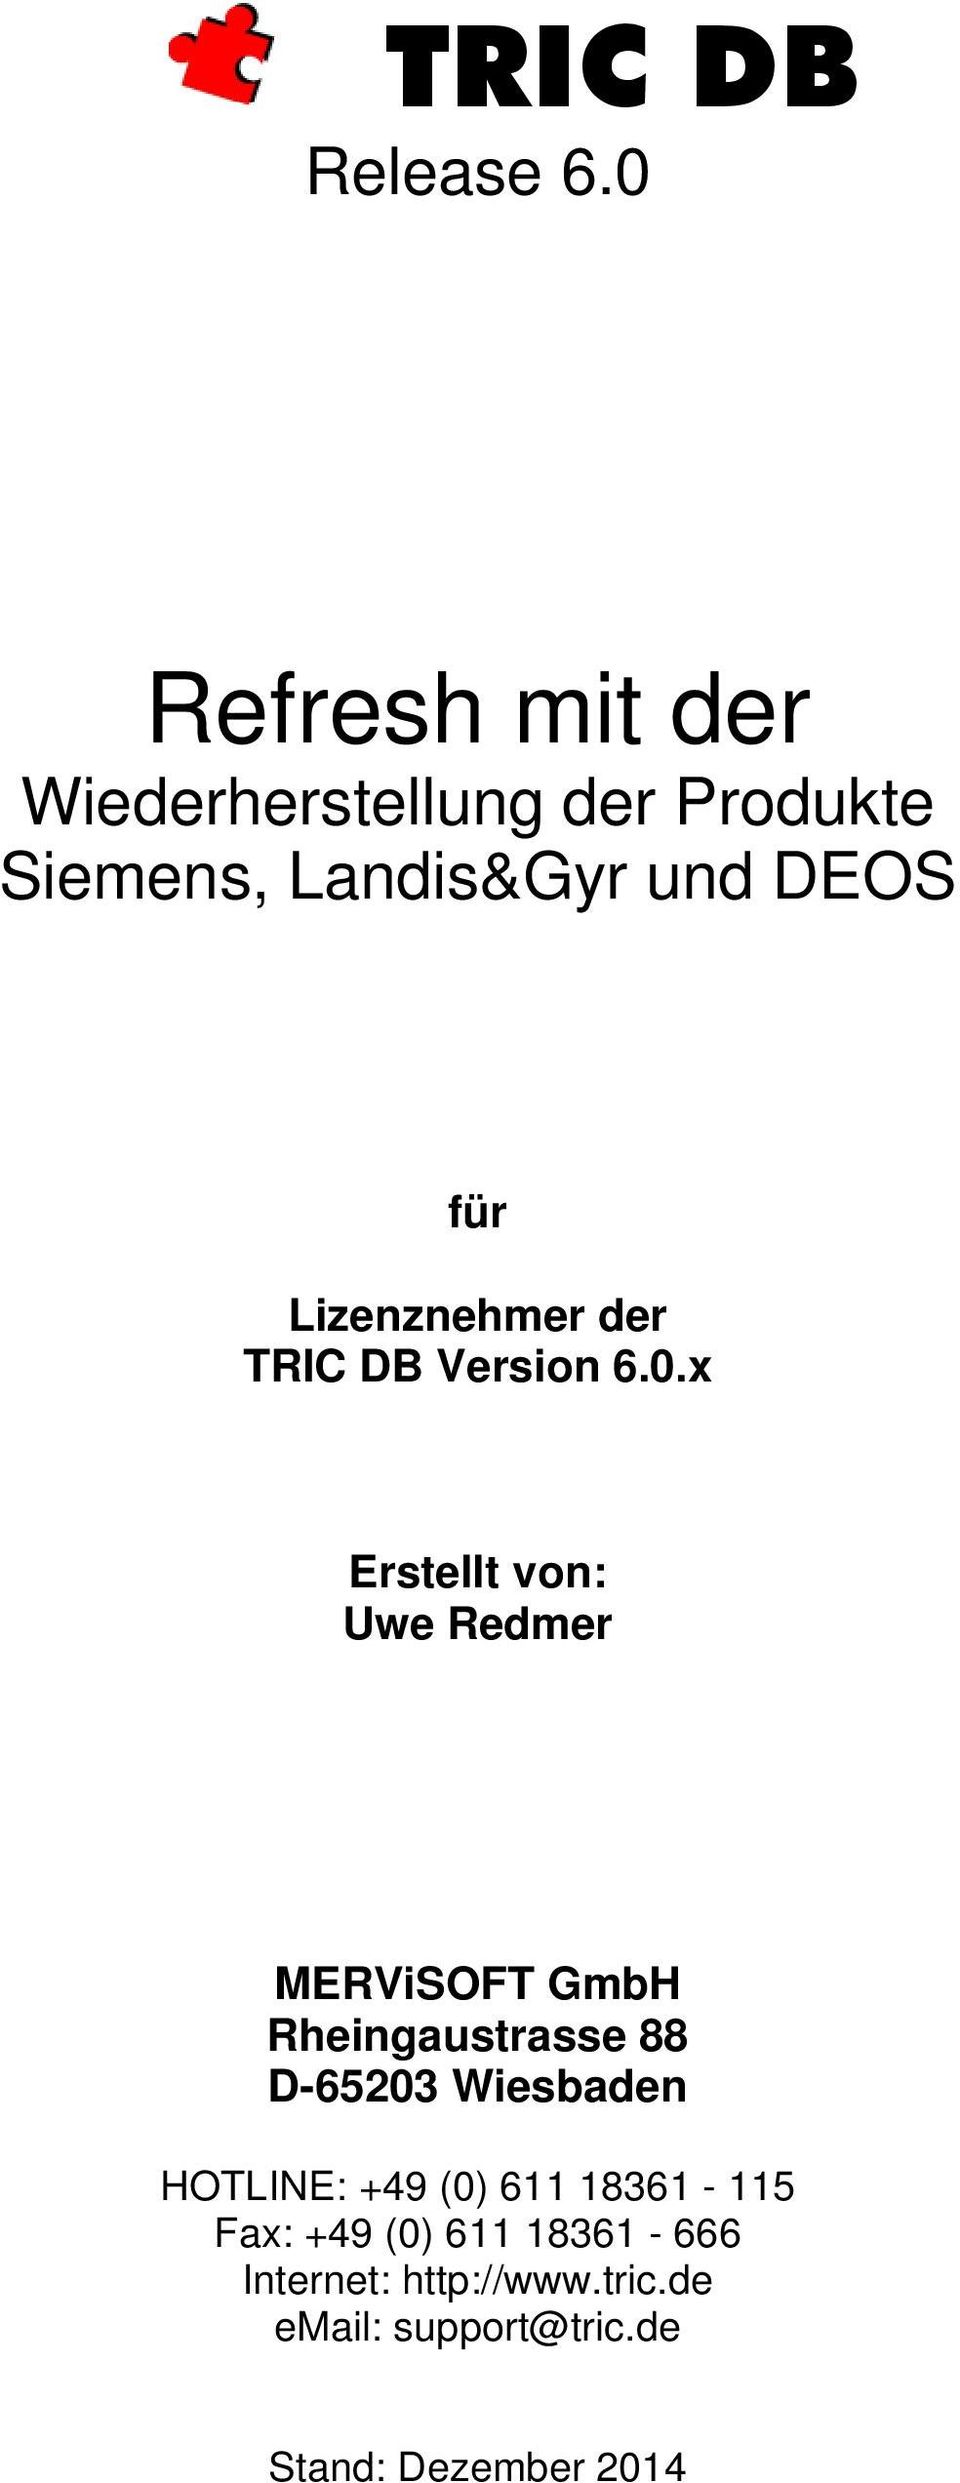 Lizenznehmer der TRIC DB Version 6.0.